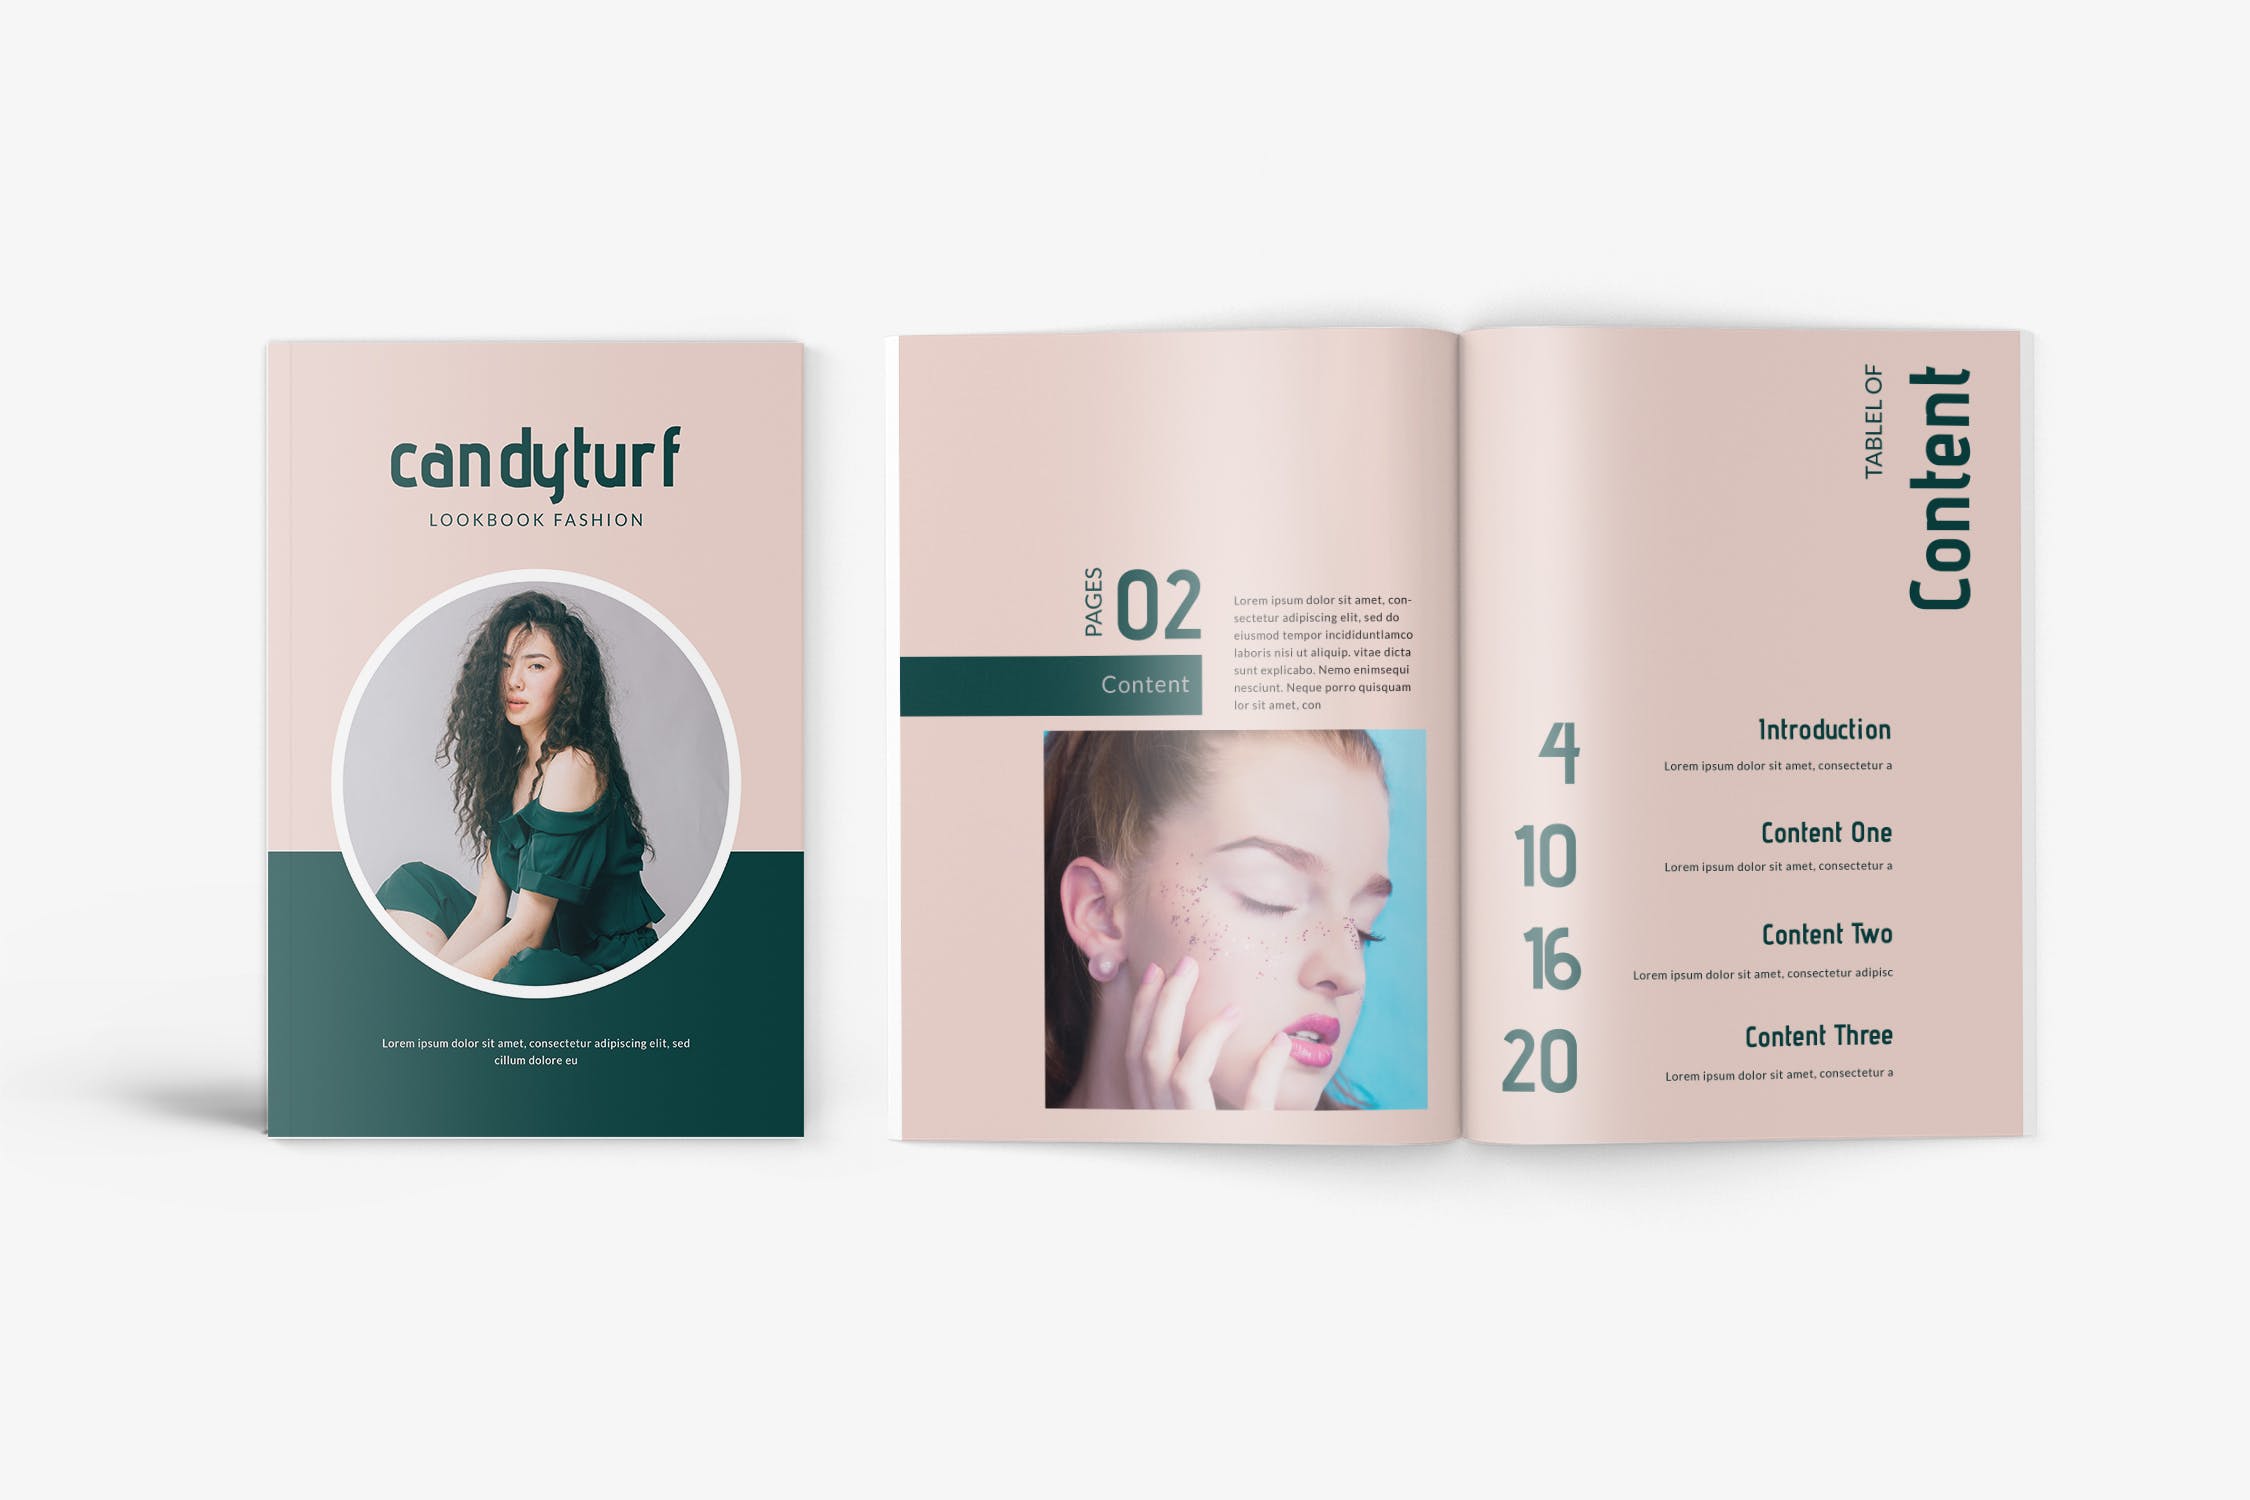 时尚服饰品牌产品非凡图库精选目录设计模板 Candyturf Fashion Lookbook Catalogue插图